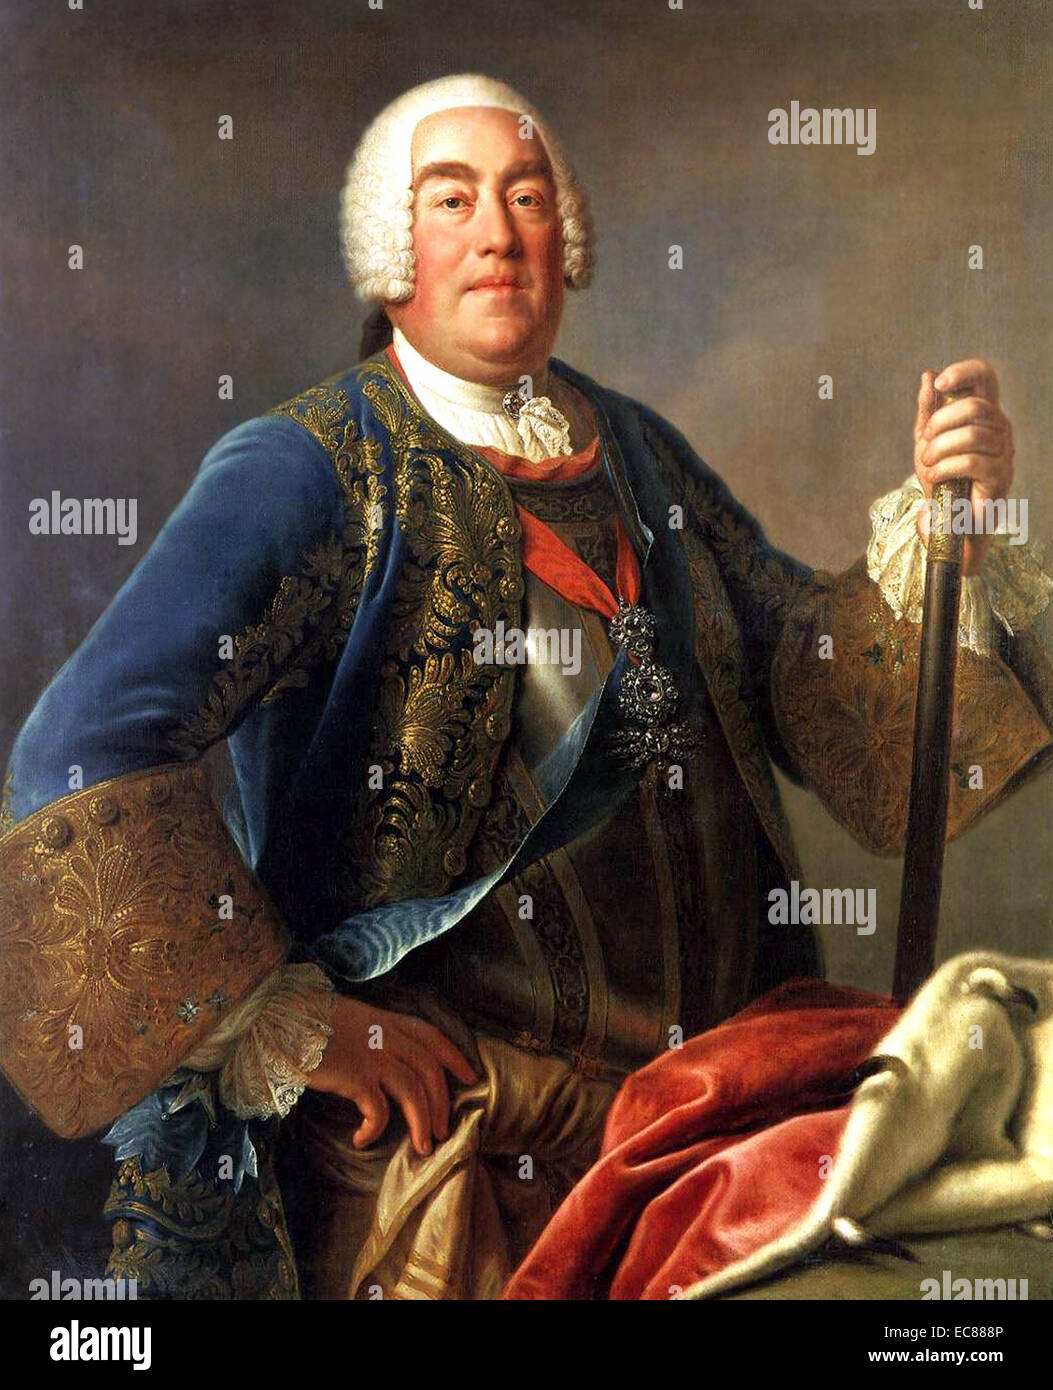 Portrait du Roi Auguste III (1696-1763) de Pologne et Grand-Duc de Lituanie. Peint par Pietro Rotari. Datée 1755 Banque D'Images